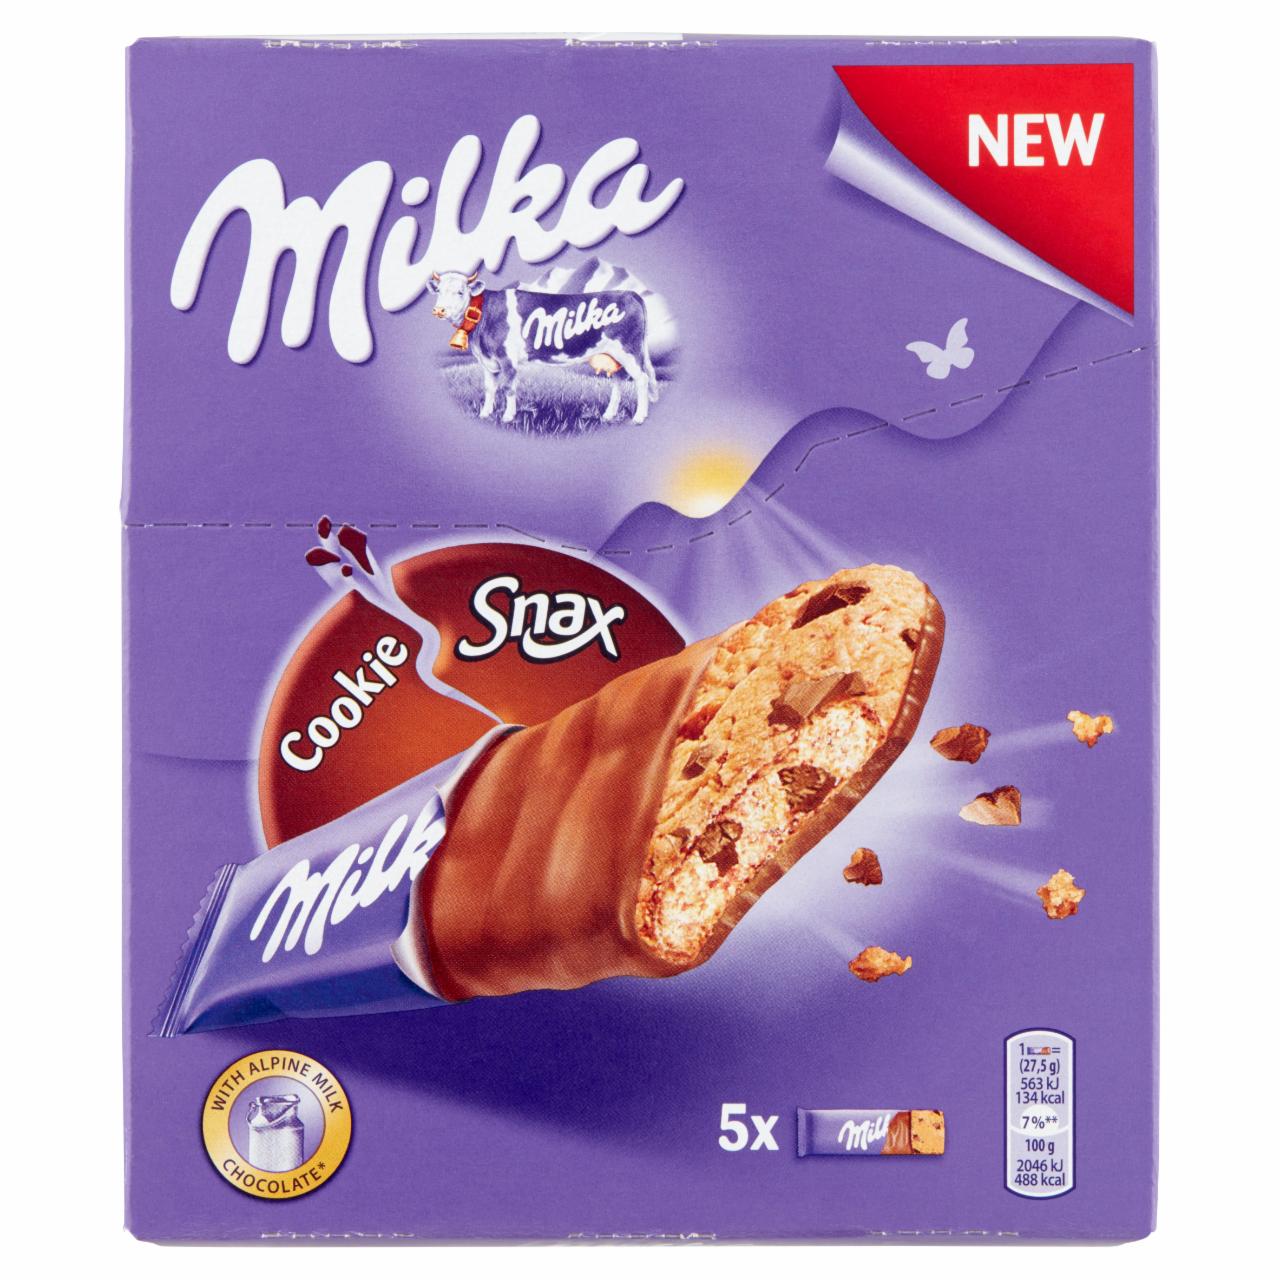 Képek - Milka Cookie Snax keksz csokoládé darabokkal, tejcsokoládéval részben mártva 5 x 27,5 g (137,5 g)